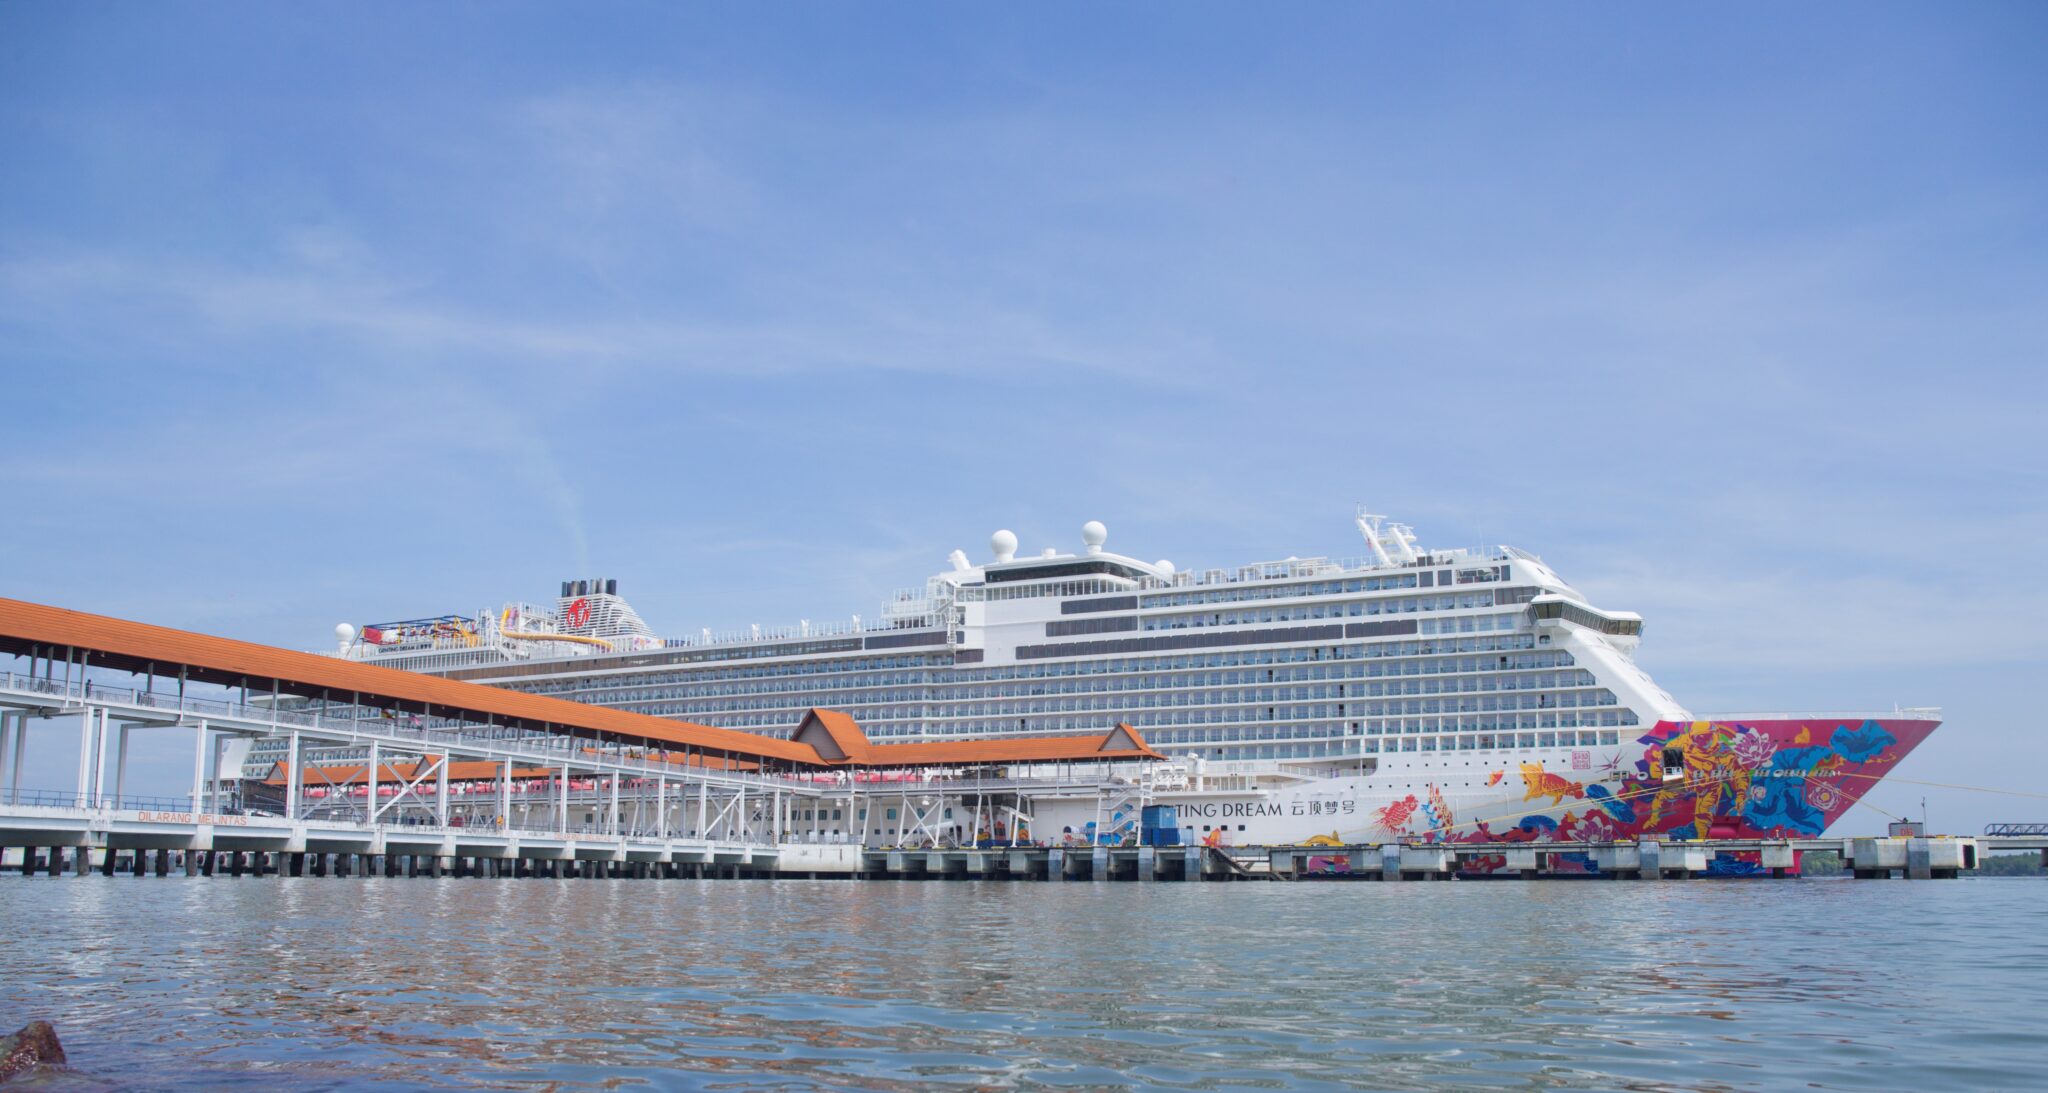 Genting Dream at Port Klang Cruise Terminal